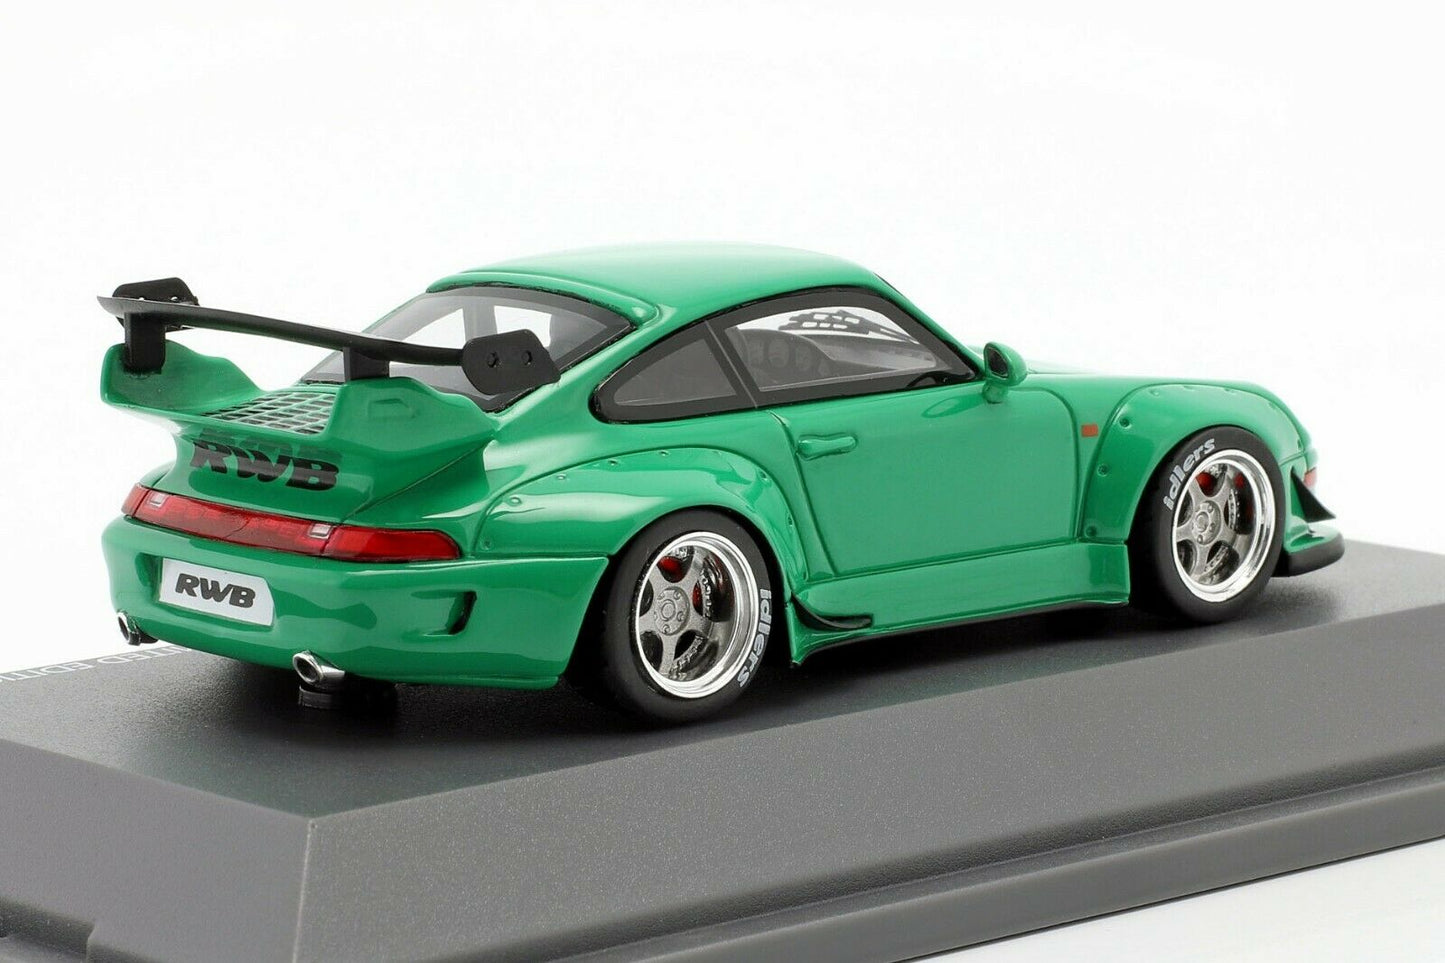 Schuco 1:43 RAUH-Welt RWB Porsche 911 964 Green 450911700